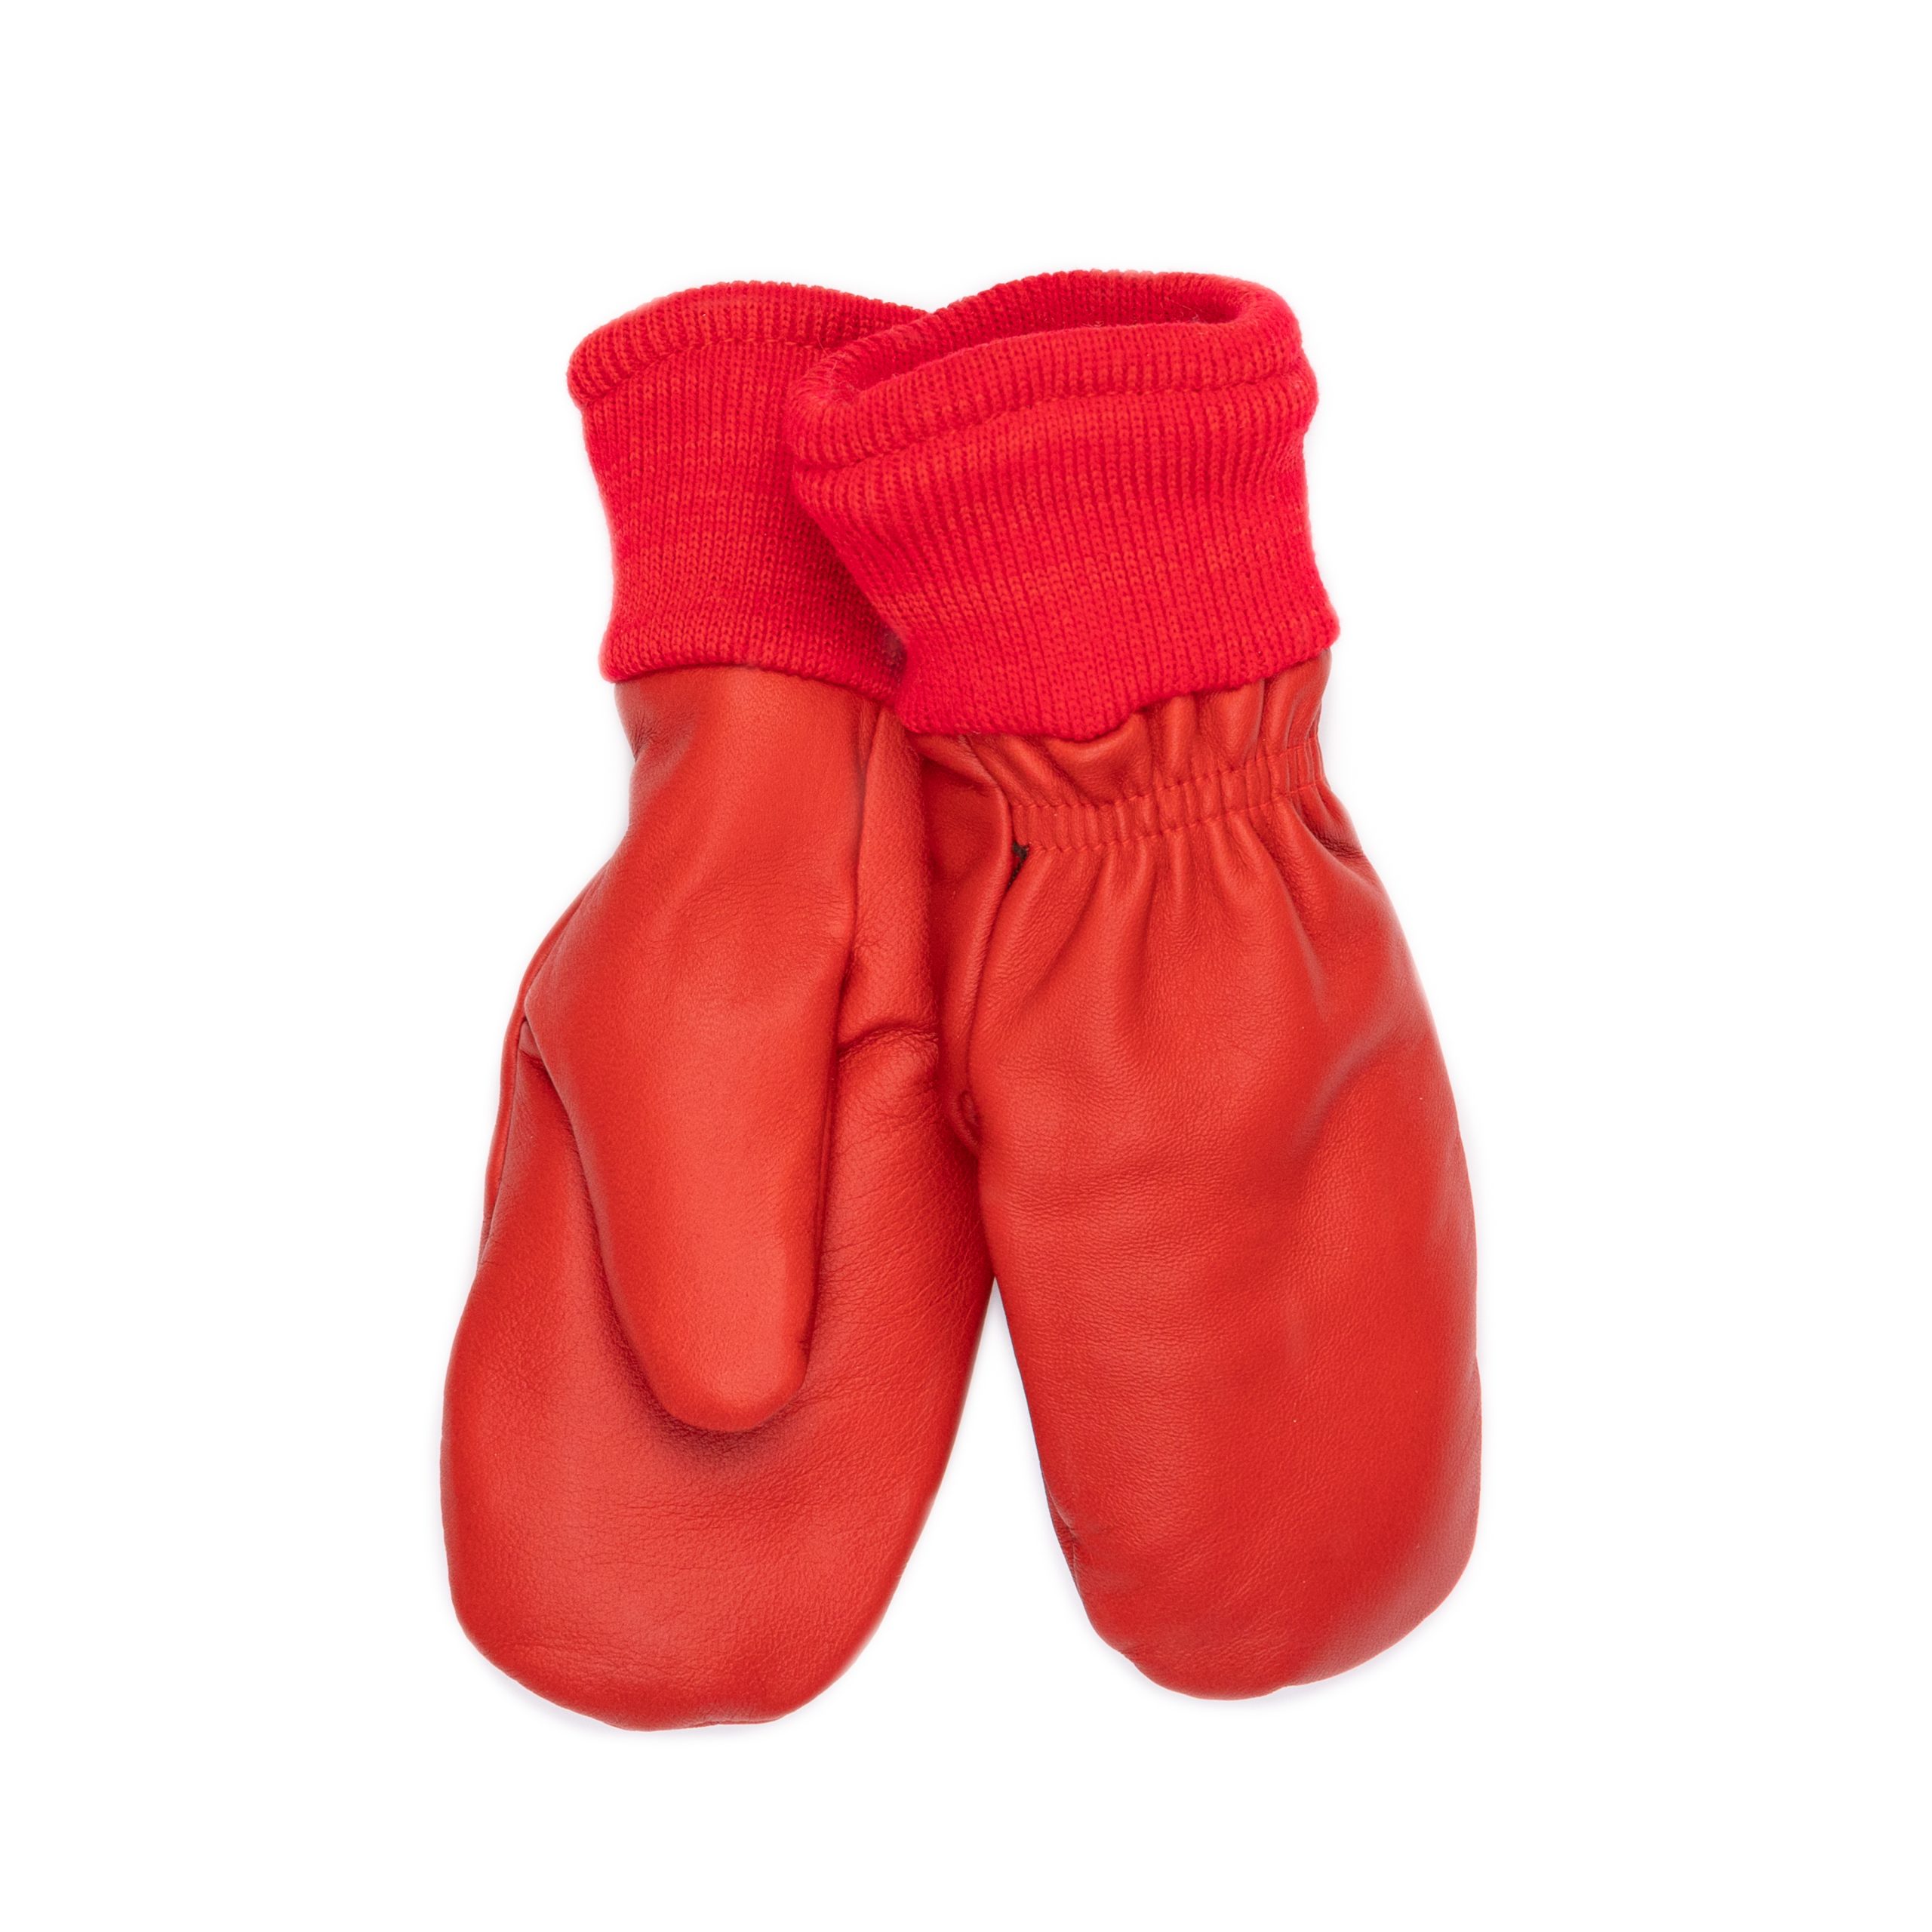 Lämpimät hanskat lapselle -Resorinahkarukkaset lapsille villavuorilla  punainen - Käsinetori - Kotimainen käsinevalmistaja